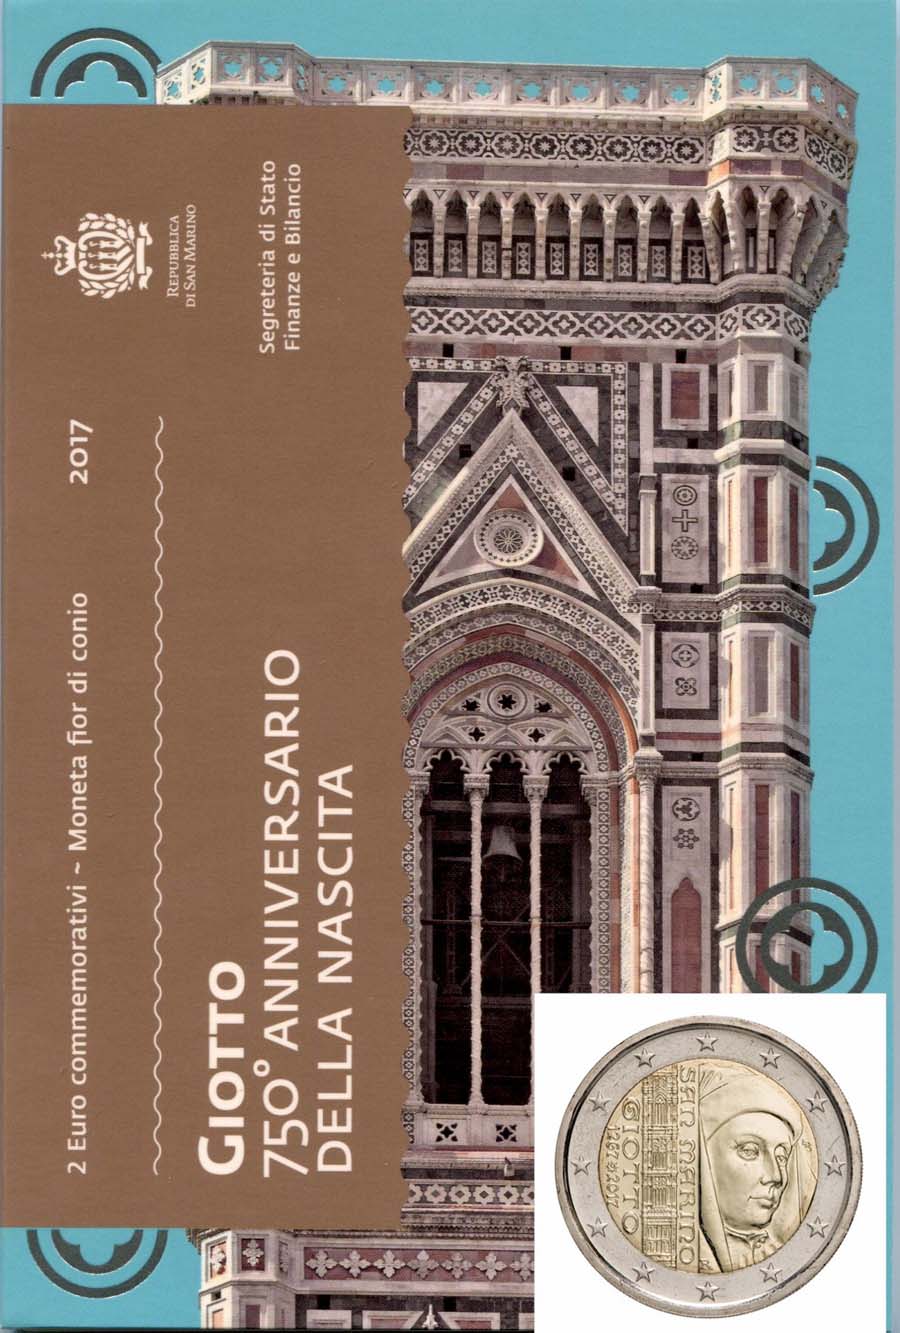 Giotto - 2 Euro in confezione ufficiale